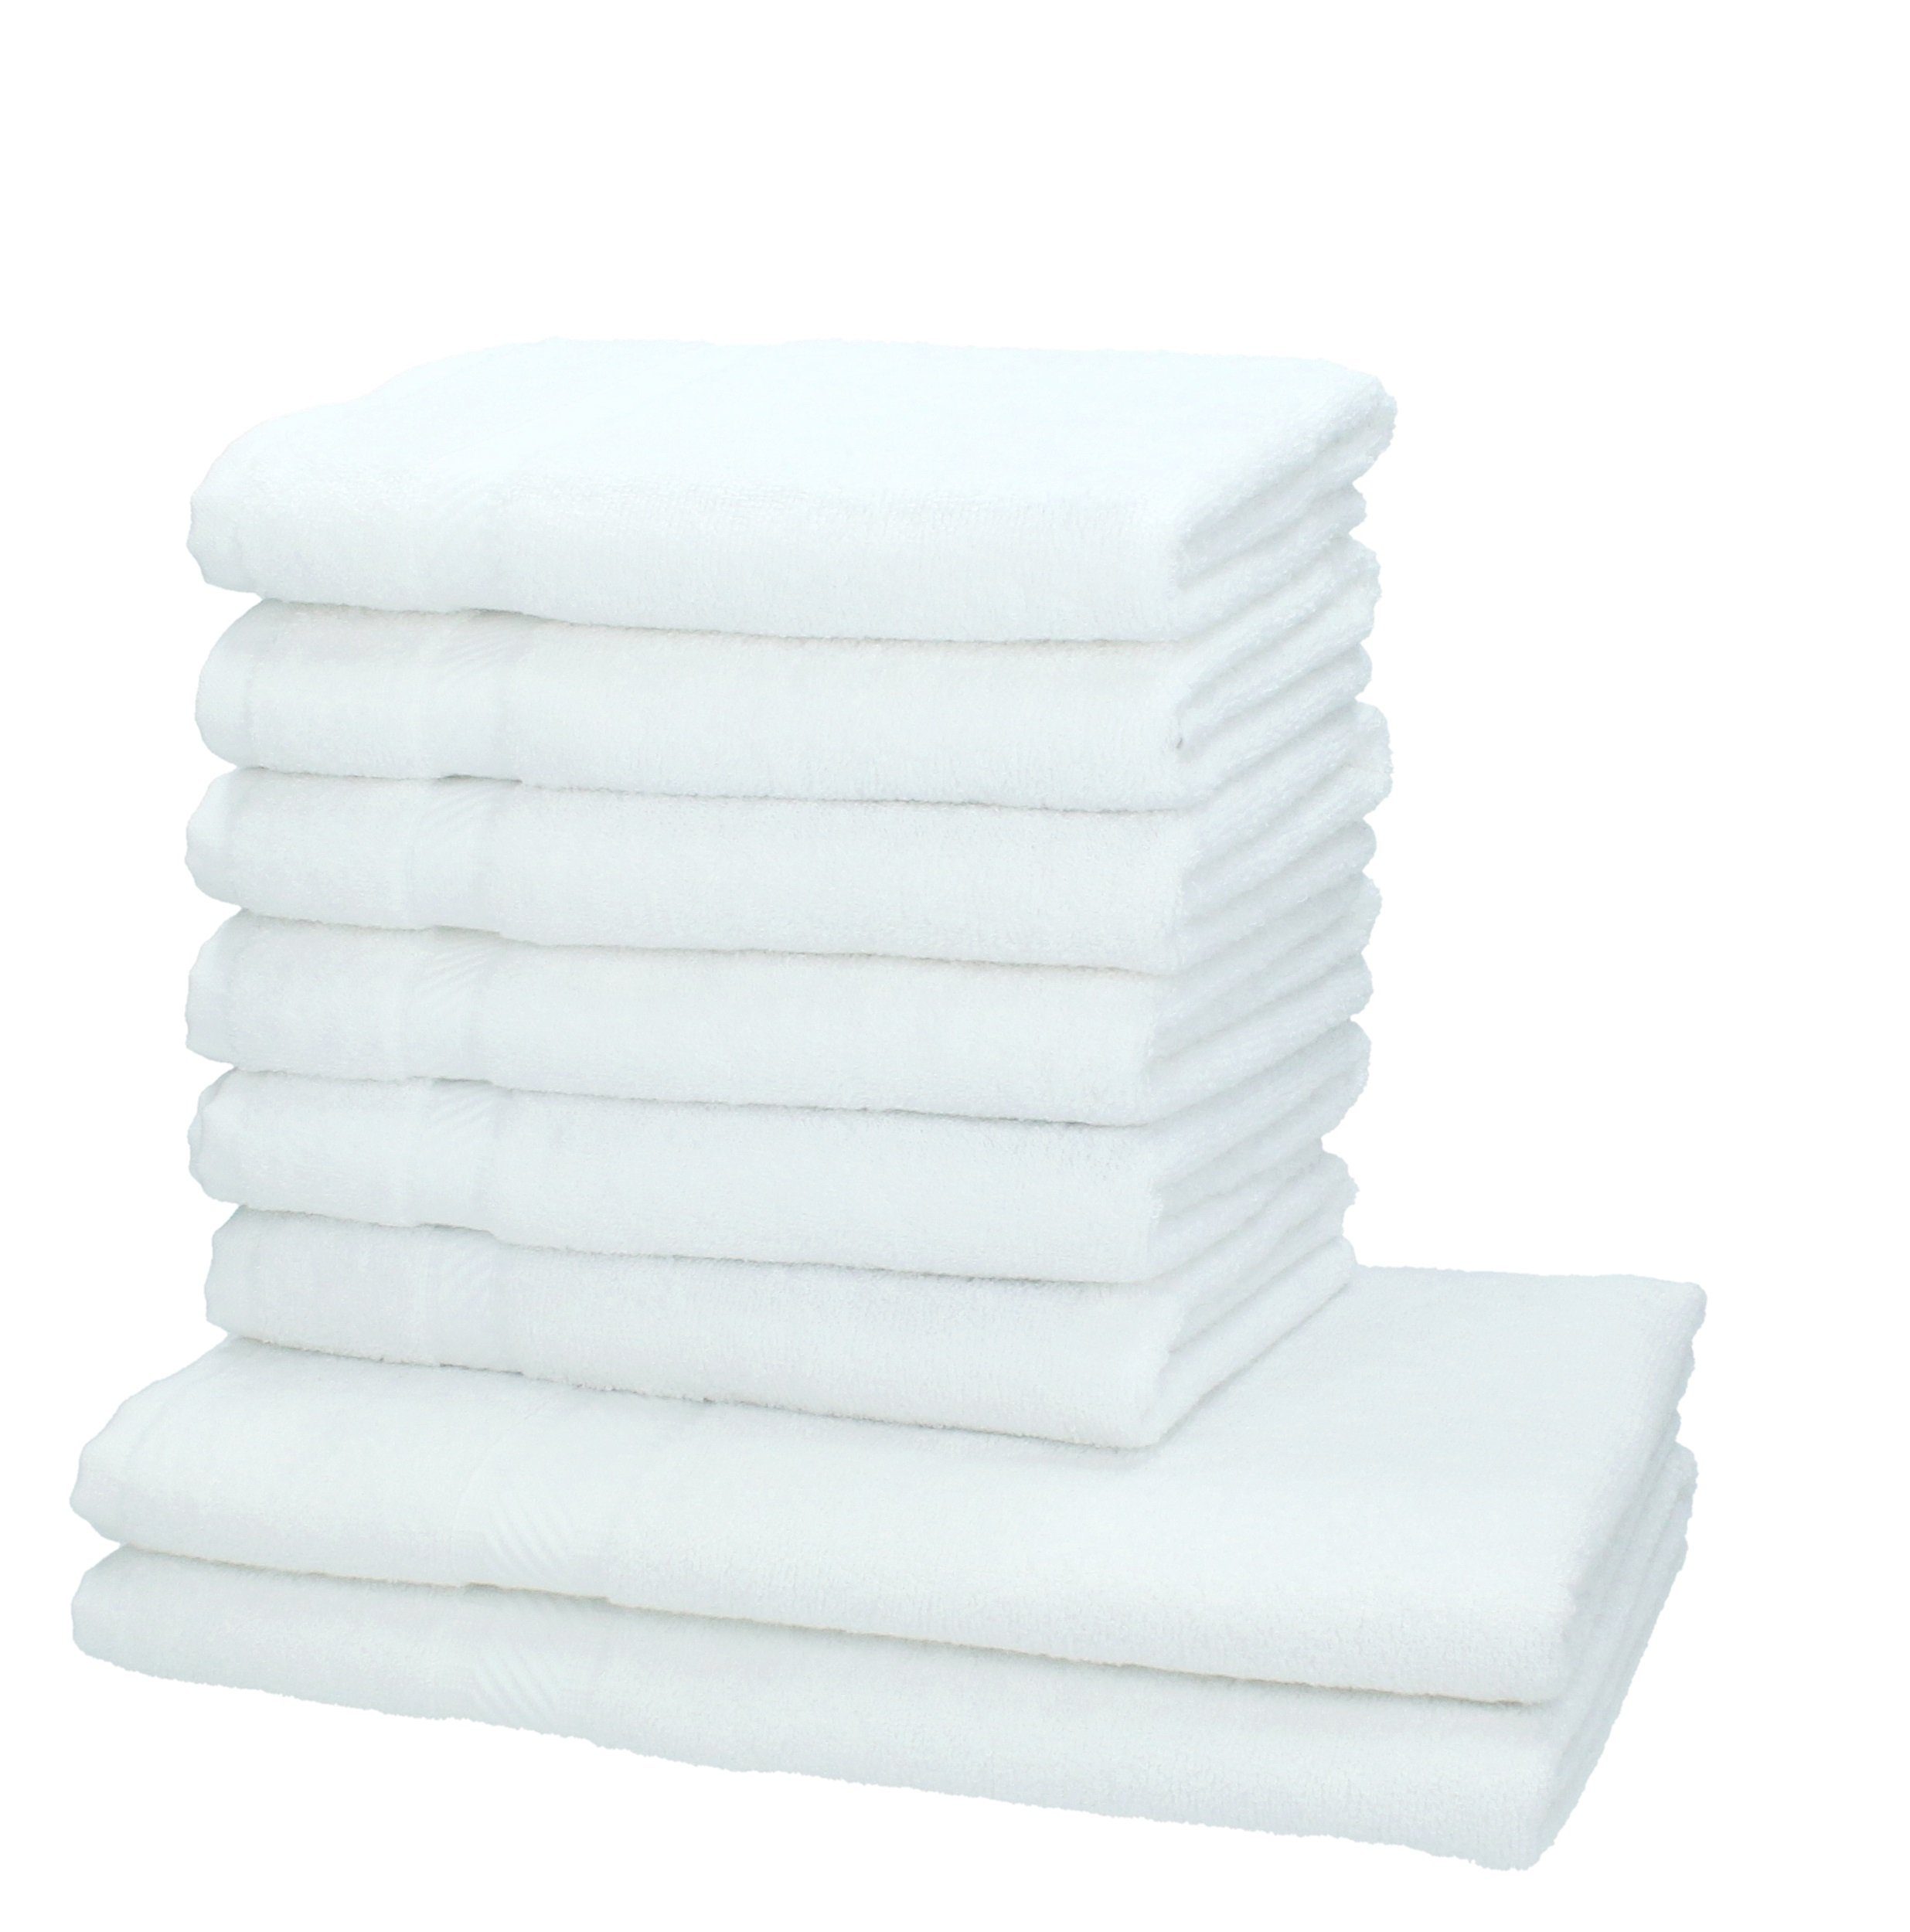 Betz Handtuch Set 8-tlg. Handtuch-Set Palermo Farbe weiß, 100% Baumwolle | Handtuch-Sets